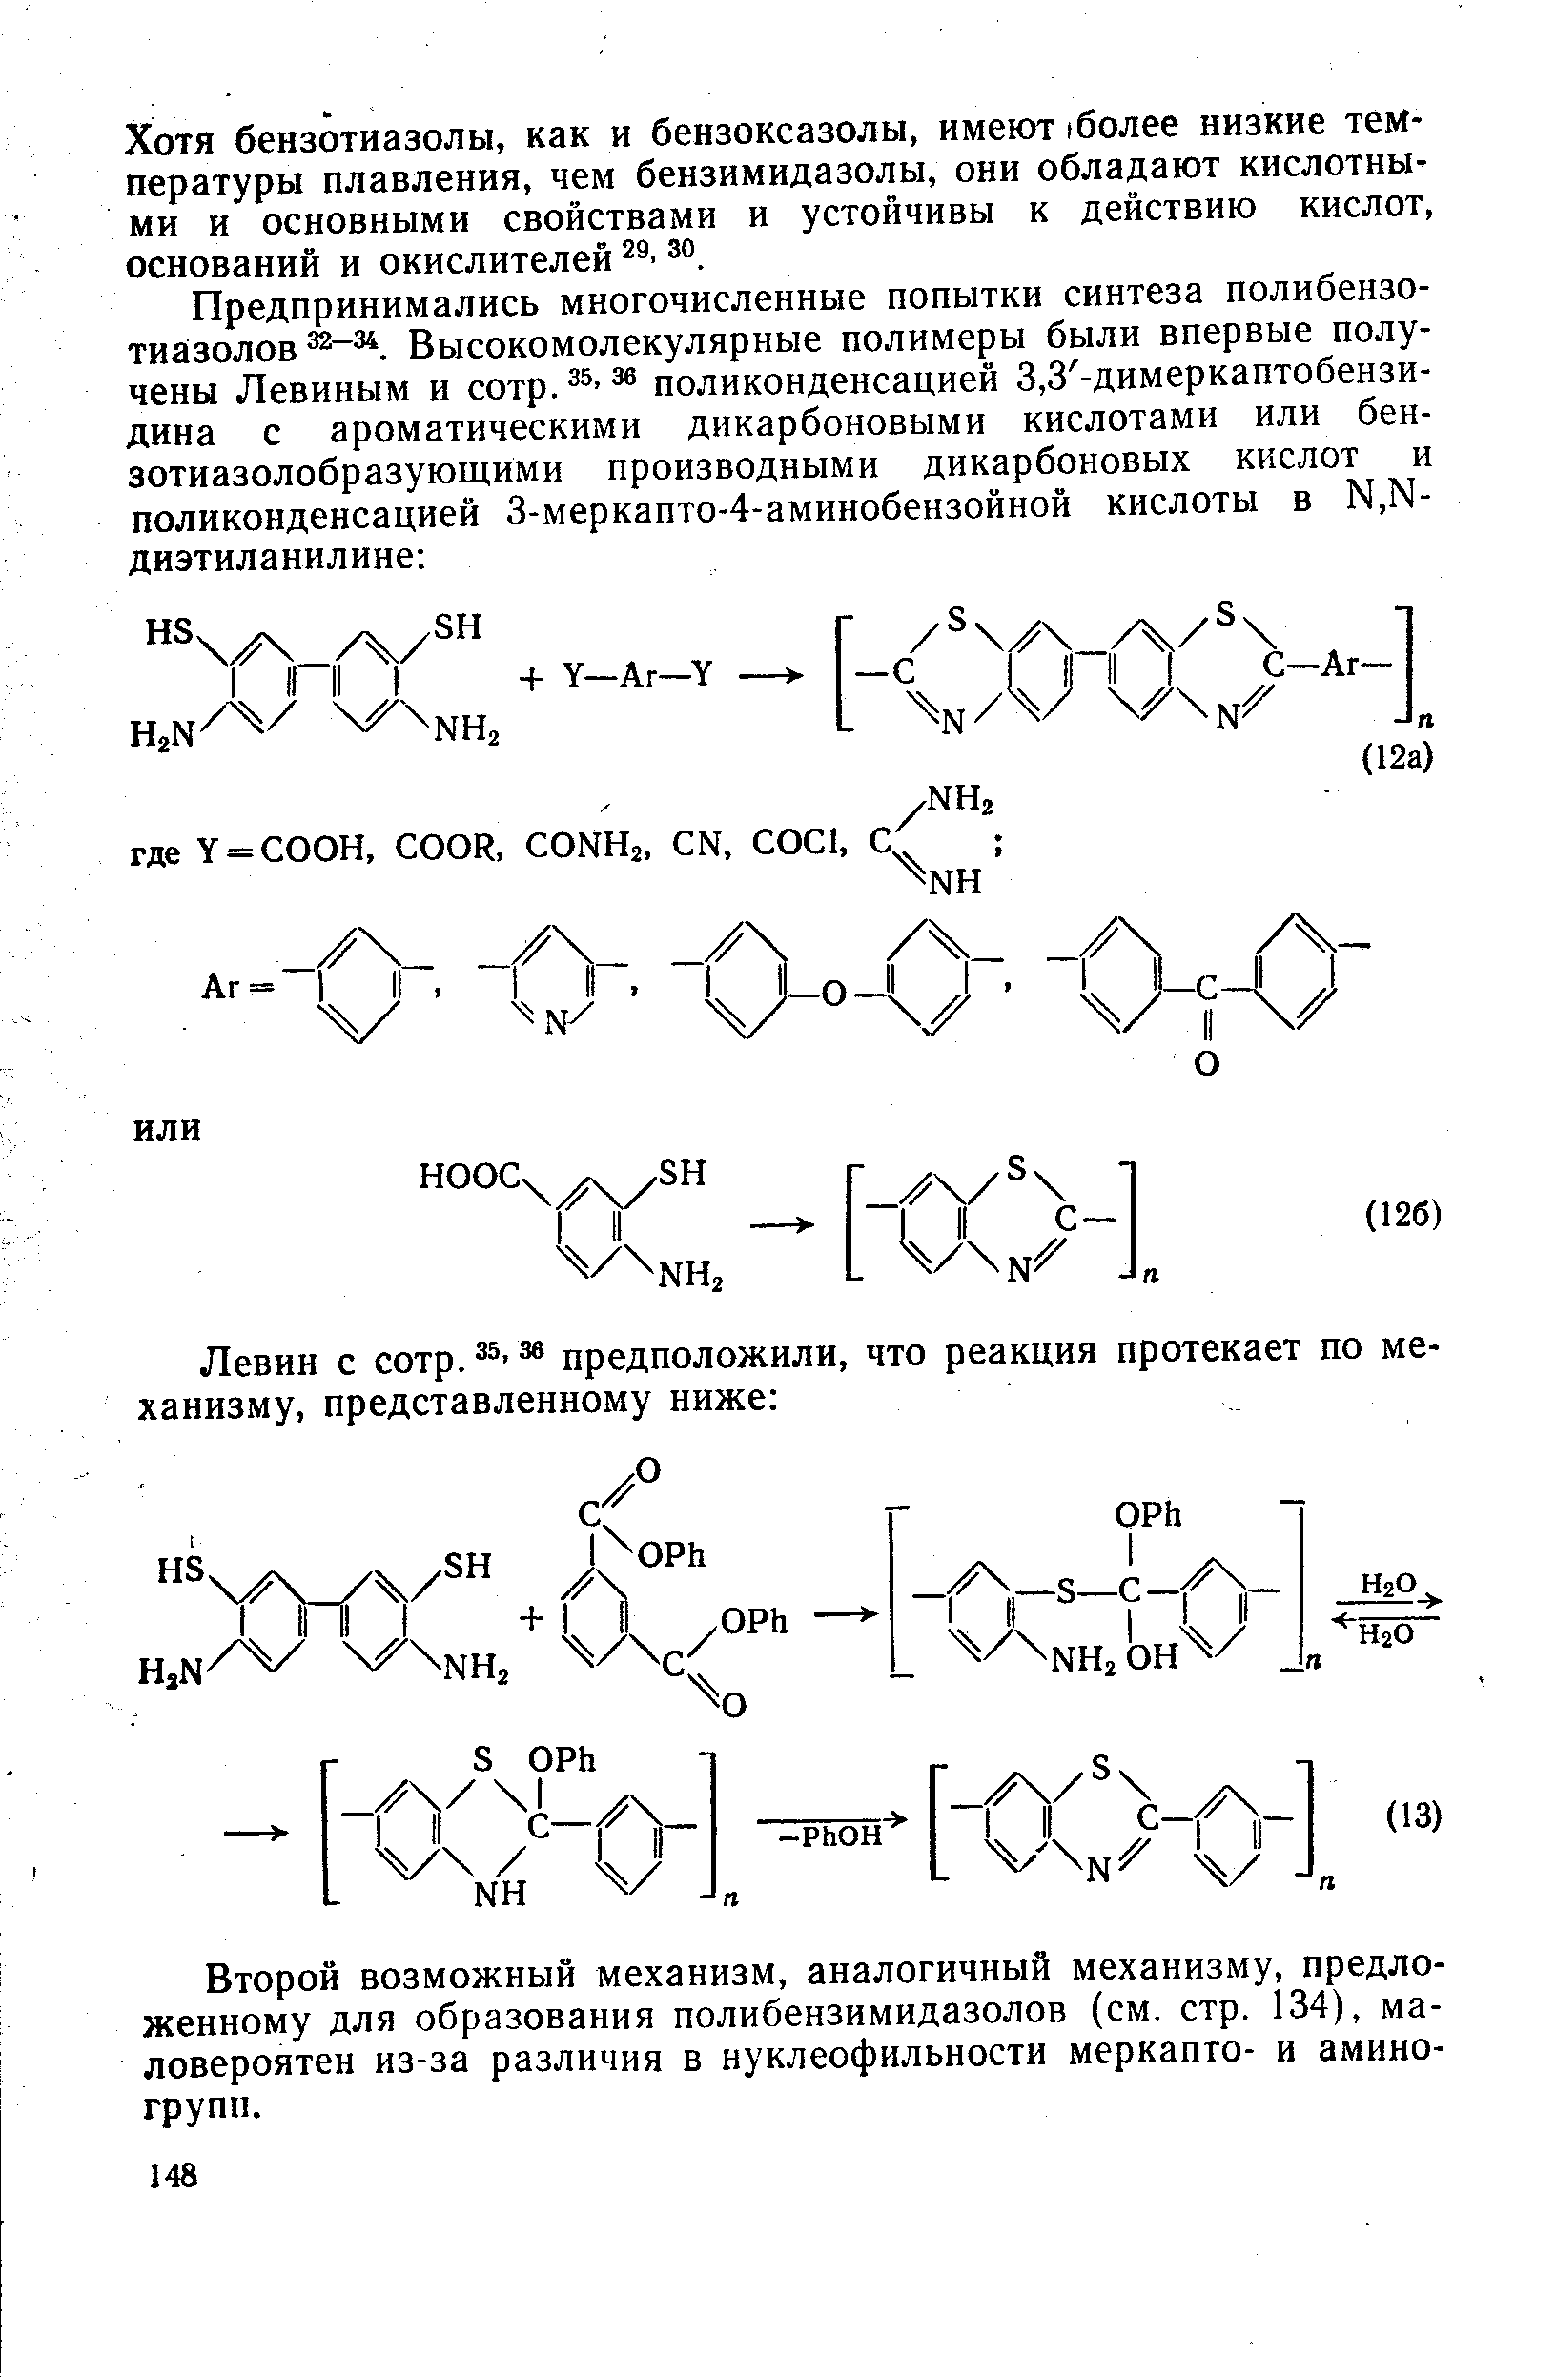 Второй возможный механизм, аналогичный механизму, предложенному для образования полибензимидазолов (см. стр. 134), маловероятен из-за различия в нуклеофильности меркапто- и аминогрупп.